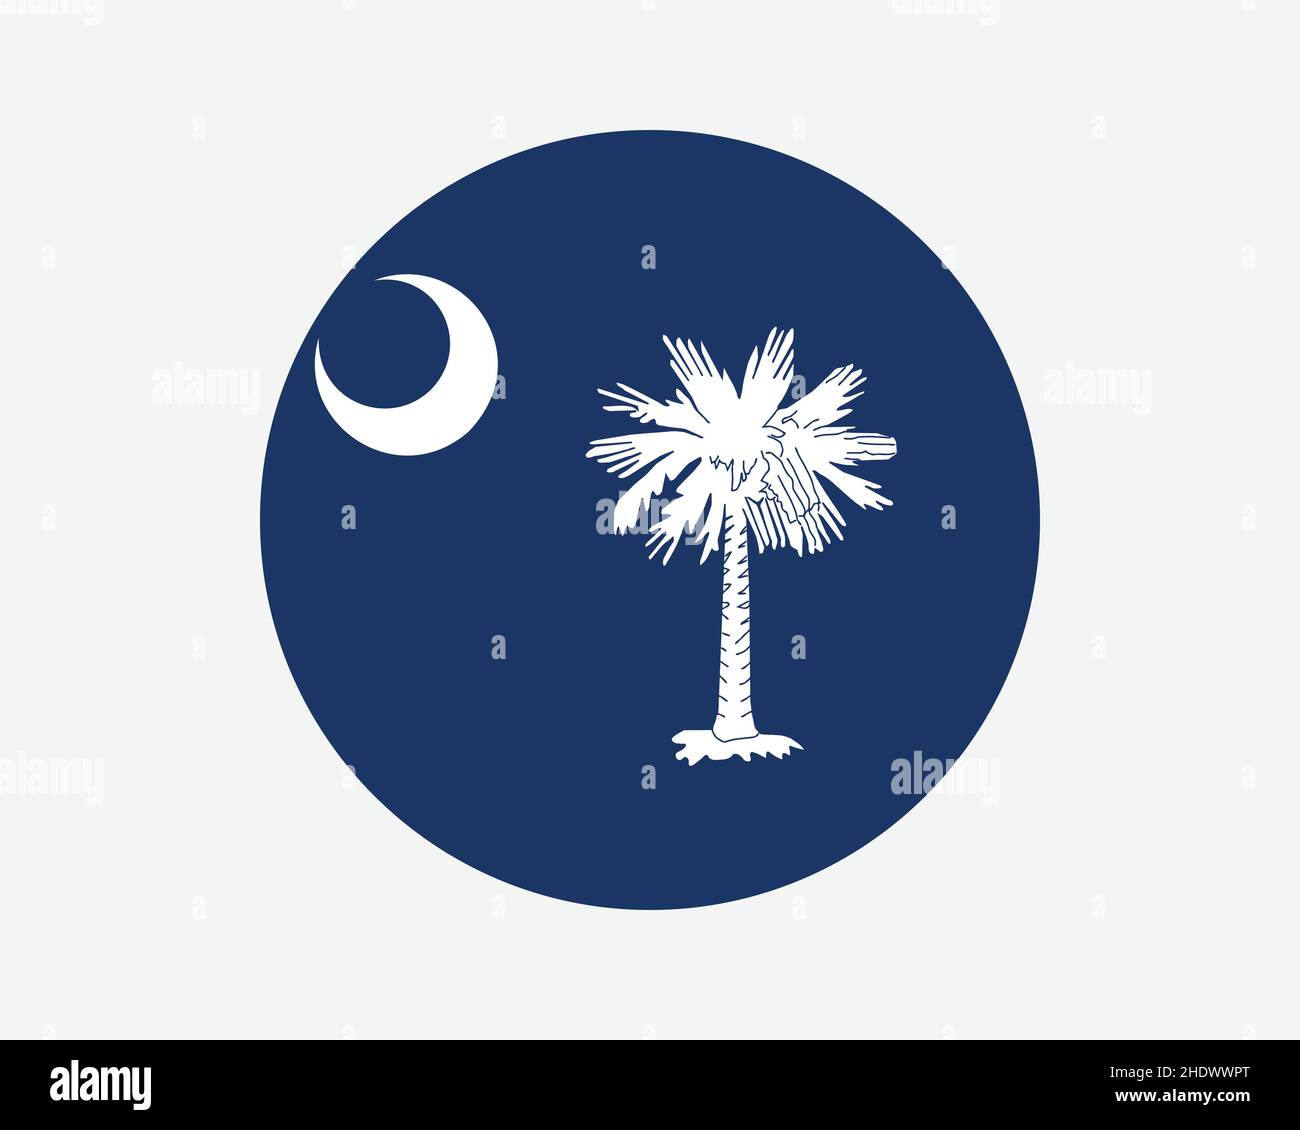 Drapeau d'État rond des États-Unis de Caroline du Sud.SC, drapeau circulaire US.Etat de la Caroline du Sud, Etats-Unis d'Amérique bannière de bouton de forme circulaire.Vecteur EPS il Illustration de Vecteur